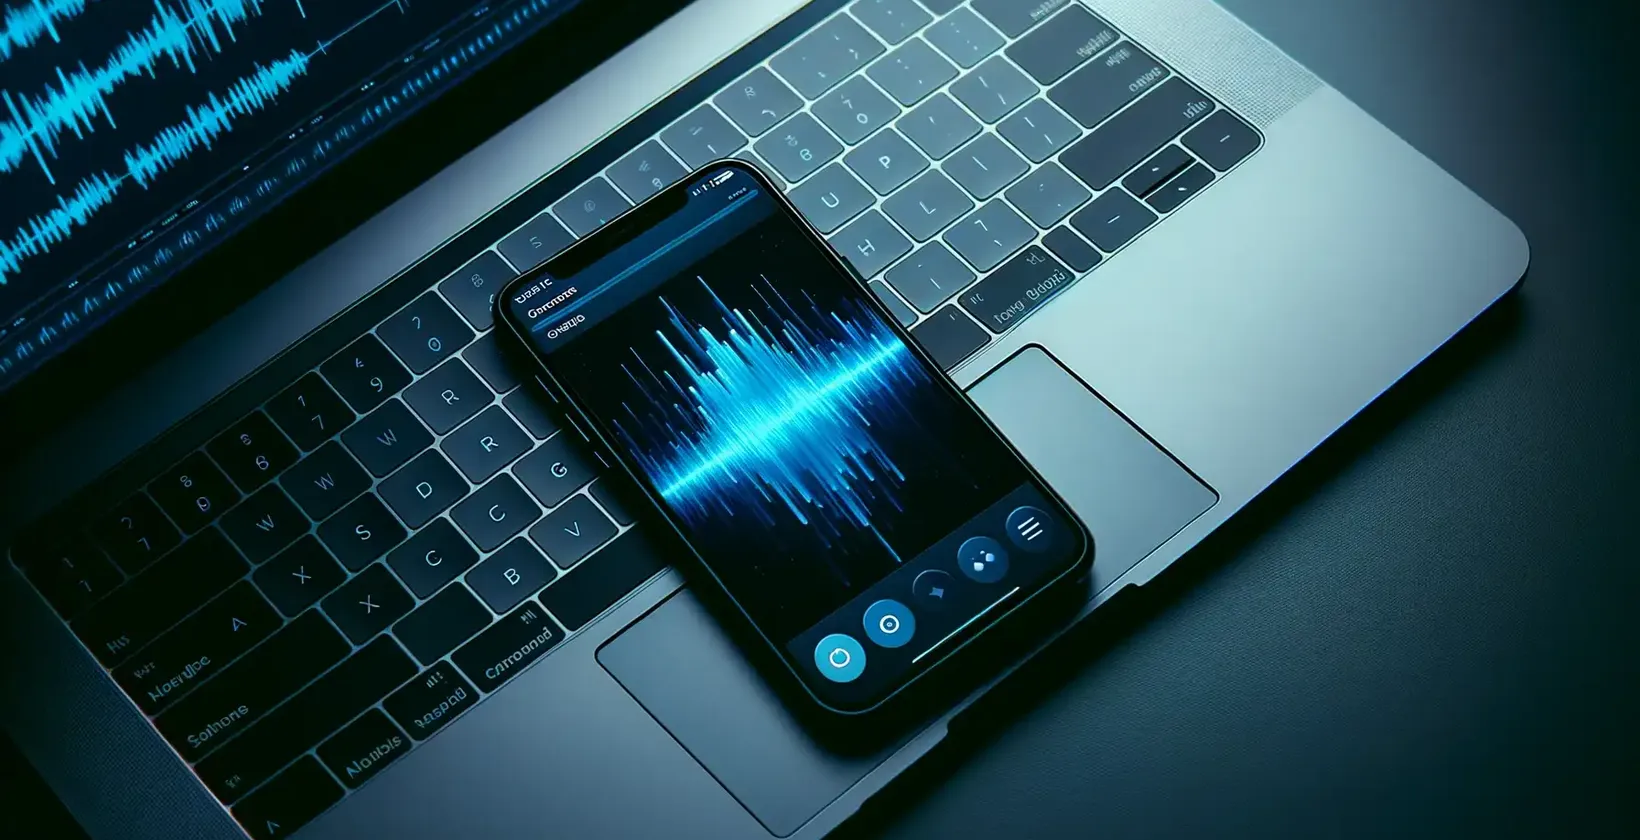 תצוגת תקריב של iPhone המציג צורות גל מלאות חיים של שמע, לצד מקלדת מוארת של מחשב נישא